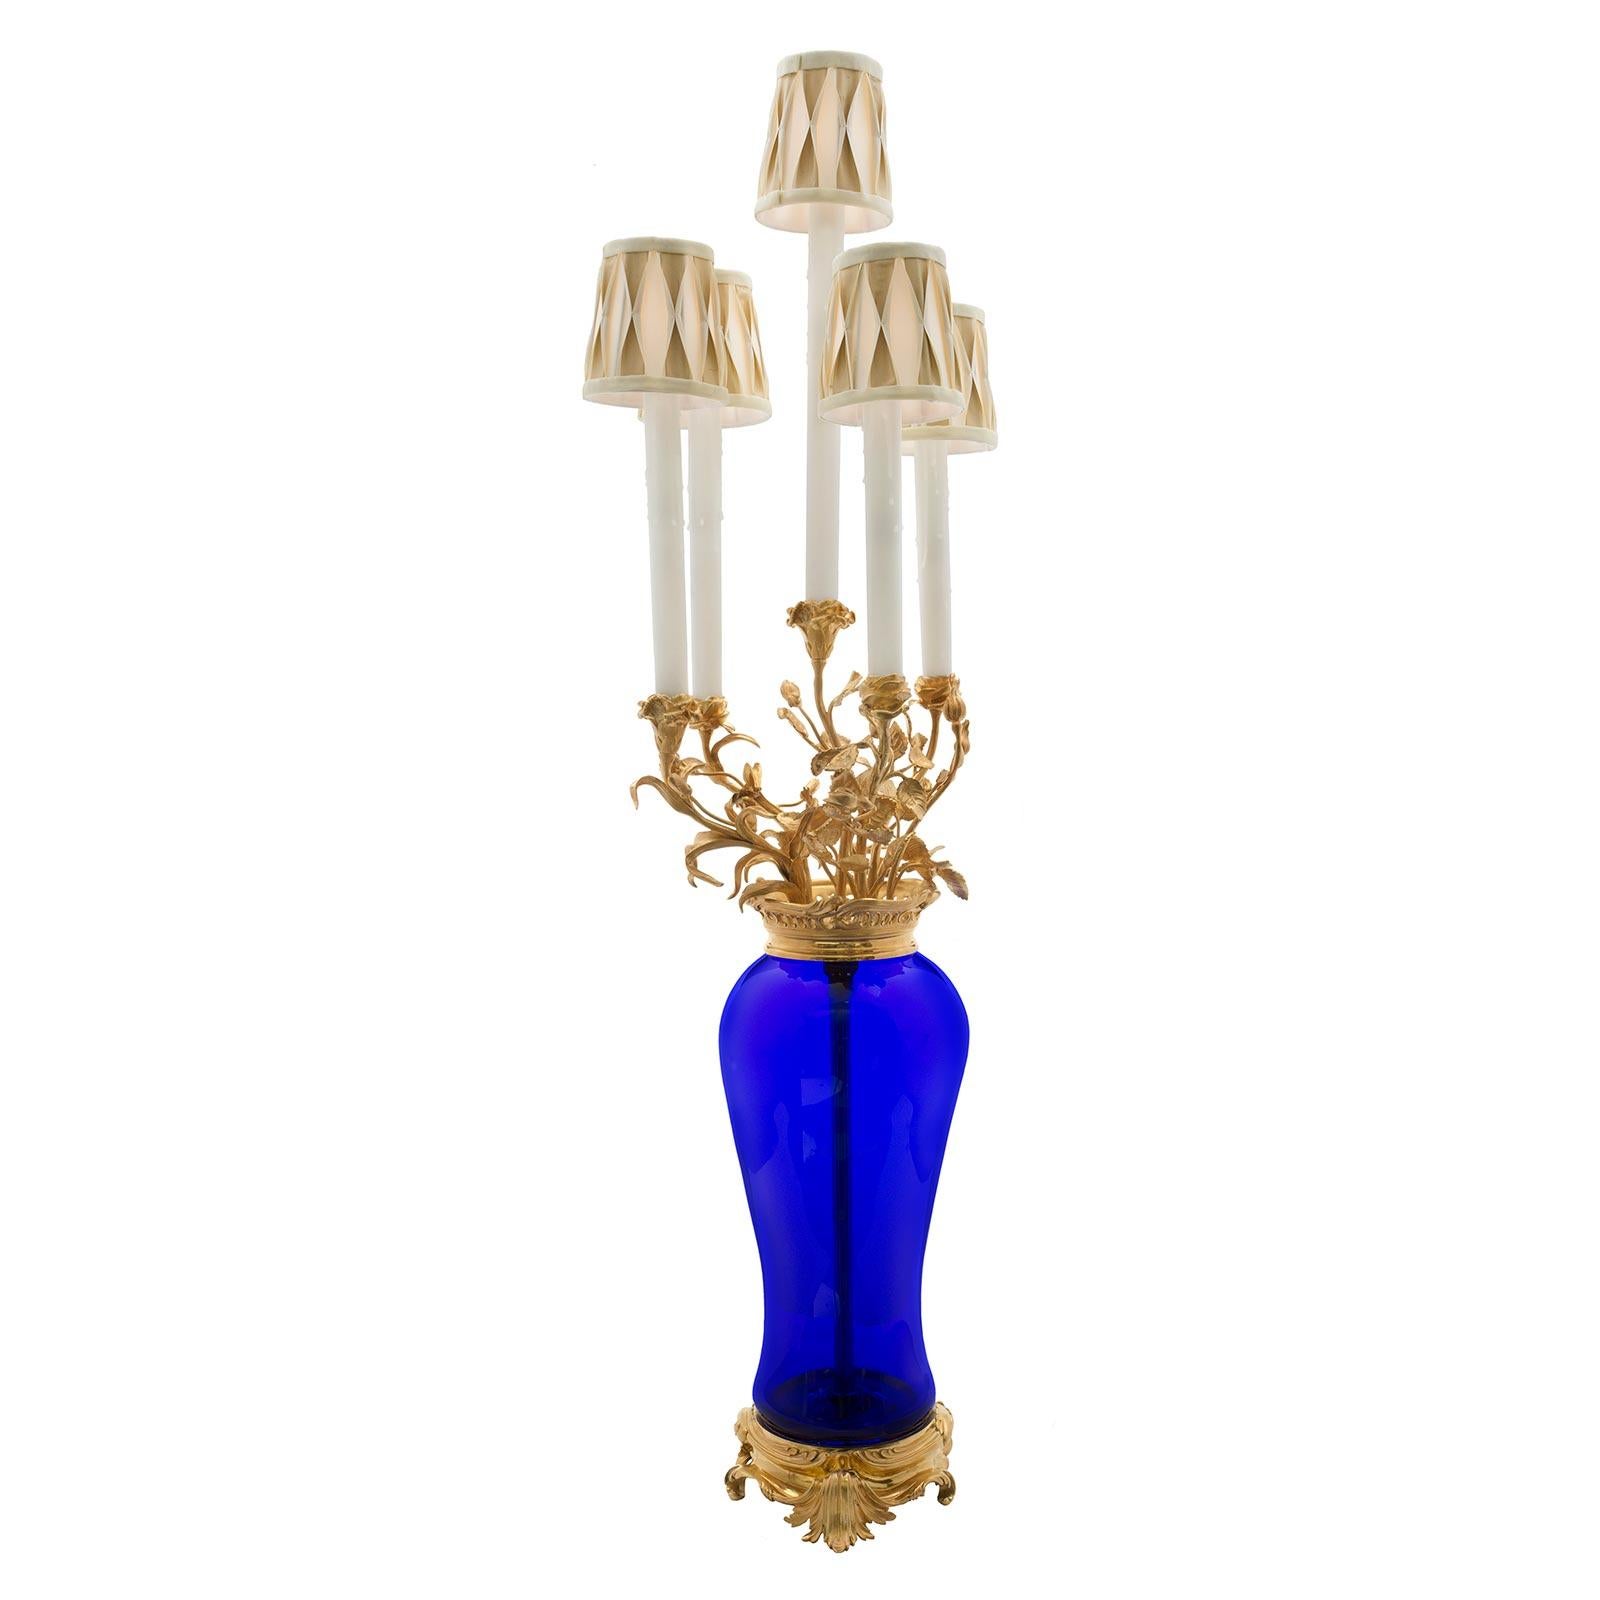 Un beau candélabre français du 19ème siècle de style Louis XVI soufflé à la main en verre bleu cobalt et ormolu monté en lampe. La lampe est surélevée par une élégante base en bronze doré à motifs feuillus, sous le corps élancé en verre bleu cobalt